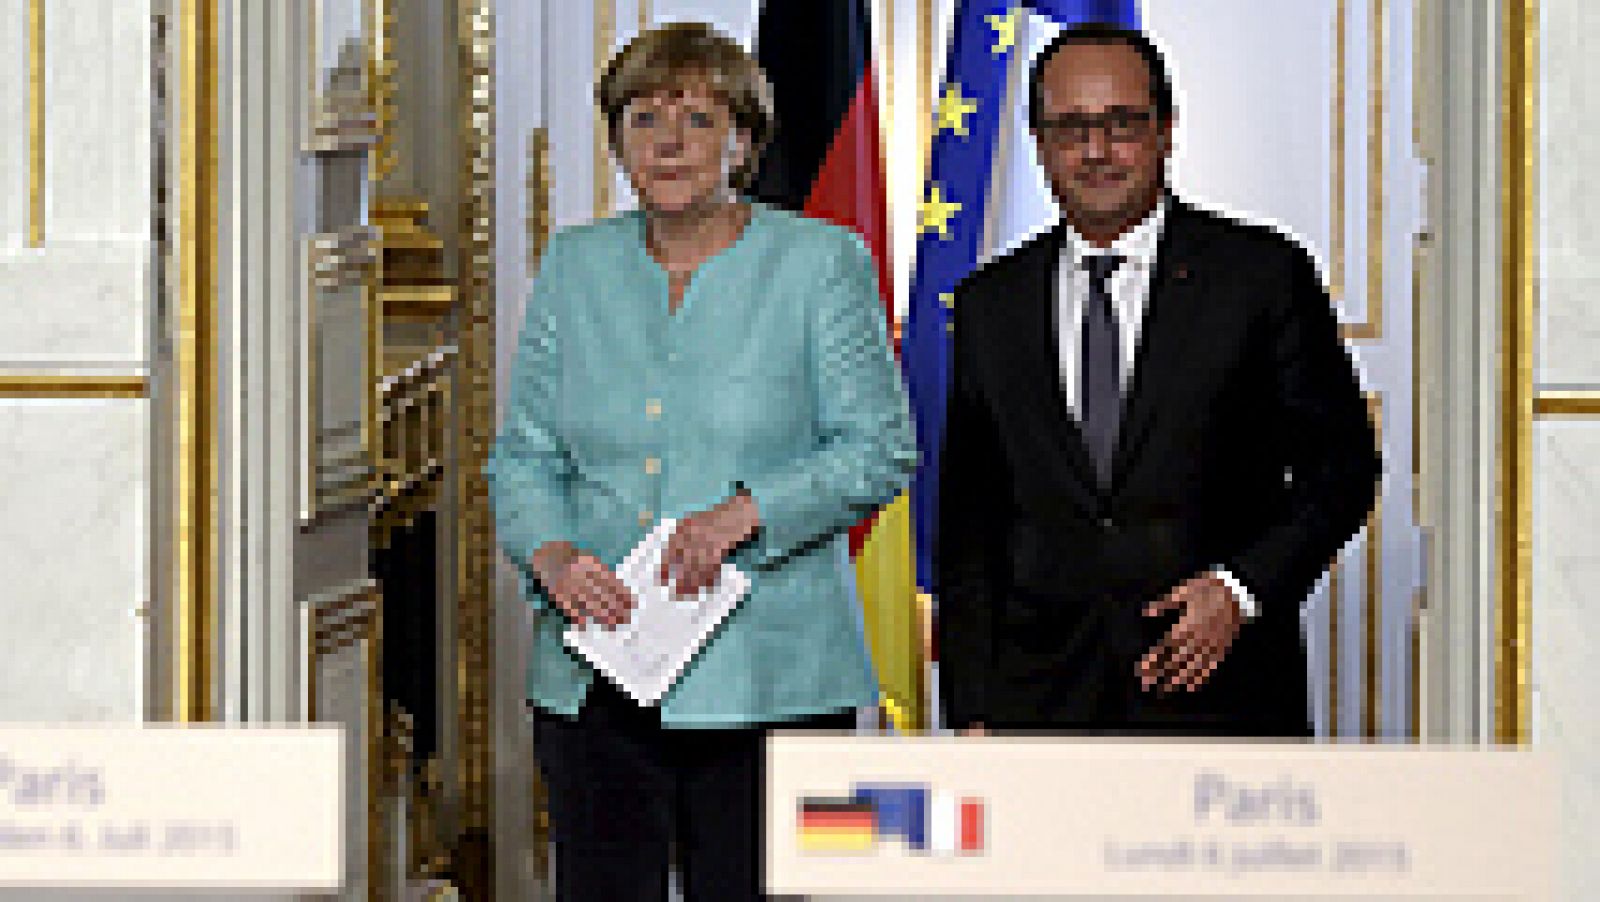 El presidente francés, François Hollande, y la canciller alemana, Angela Merkel, han insistido este lunes en que la puerta "sigue abierta" para las negociaciones con Grecia, pero que le corresponde a este país presentar una nueva propuesta aceptable para los Estados de la zona euro. "No queda mucho tiempo. Hay urgencia tanto para Grecia como para Europa", ha asegurado Hollande en una declaración conjunta con Merkel tras mantener una reunión en el Palacio del Elíseo.